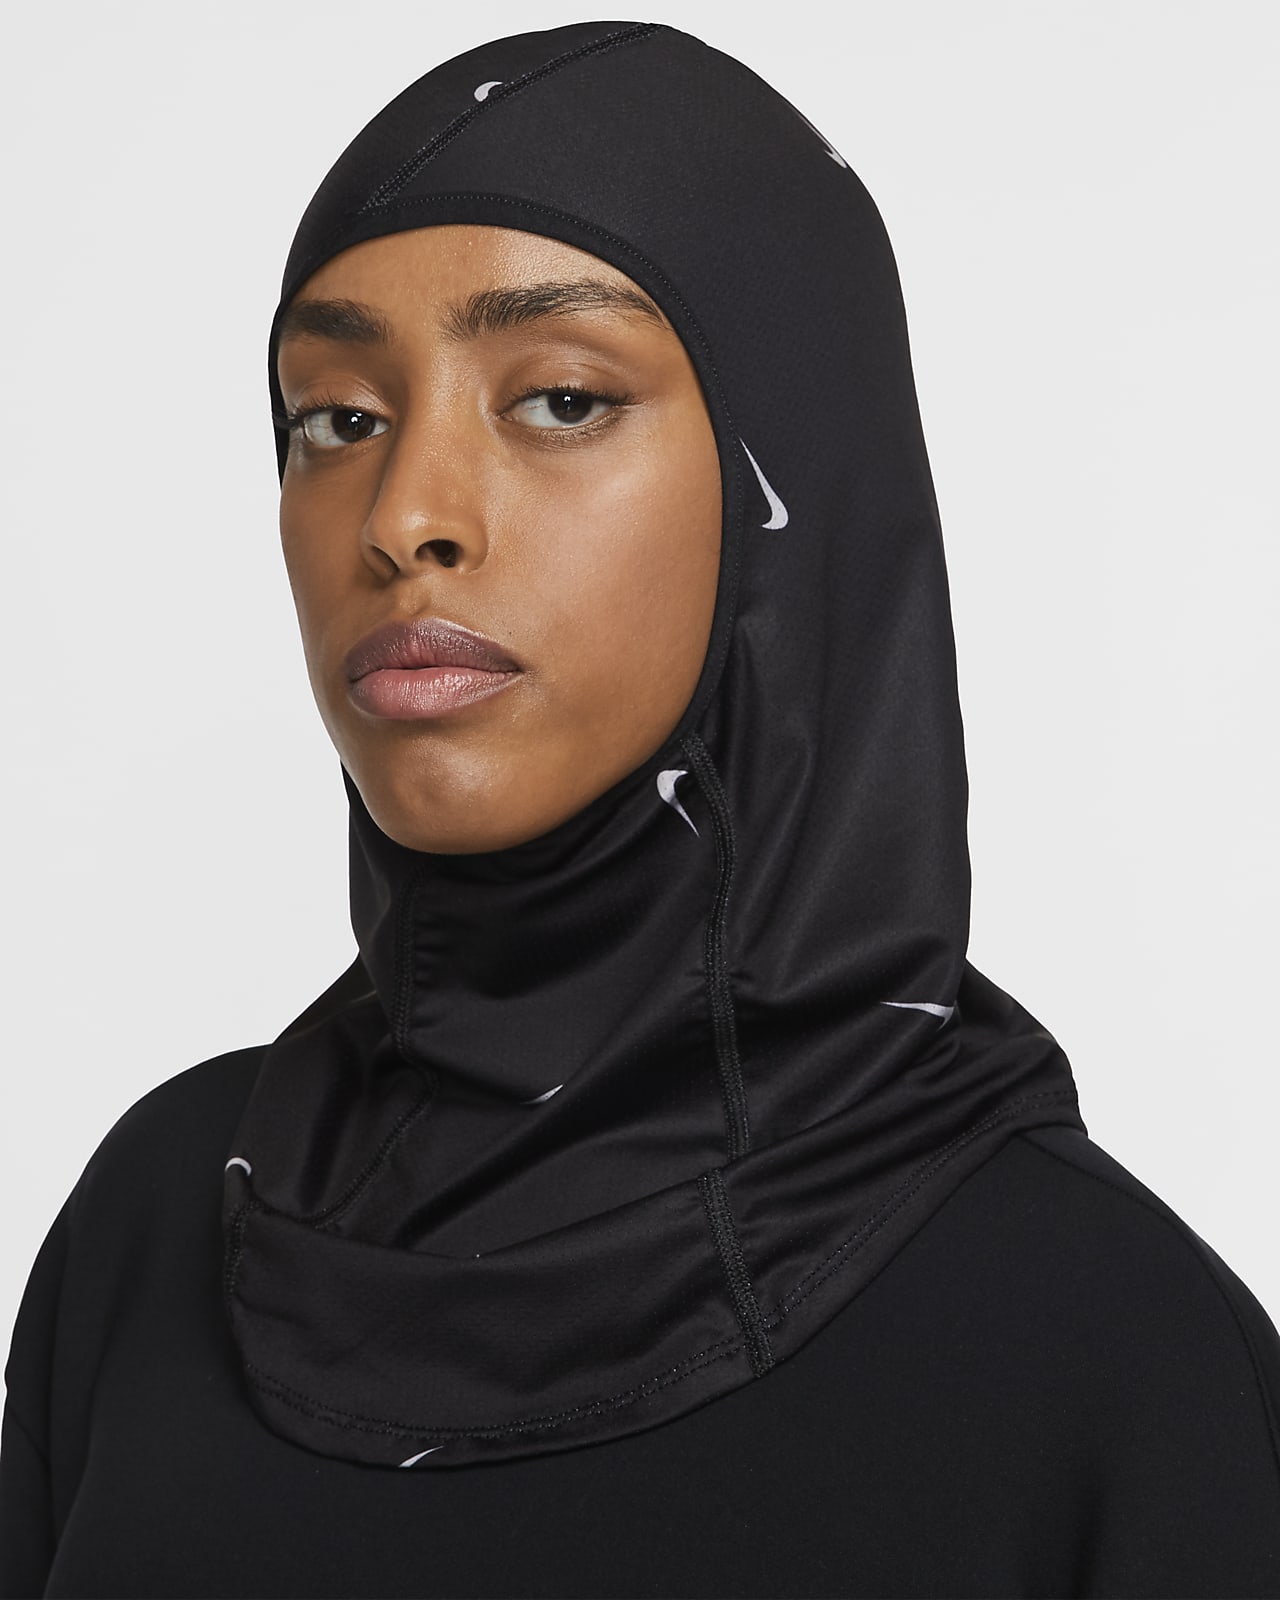 nike pro 2.0 hijab